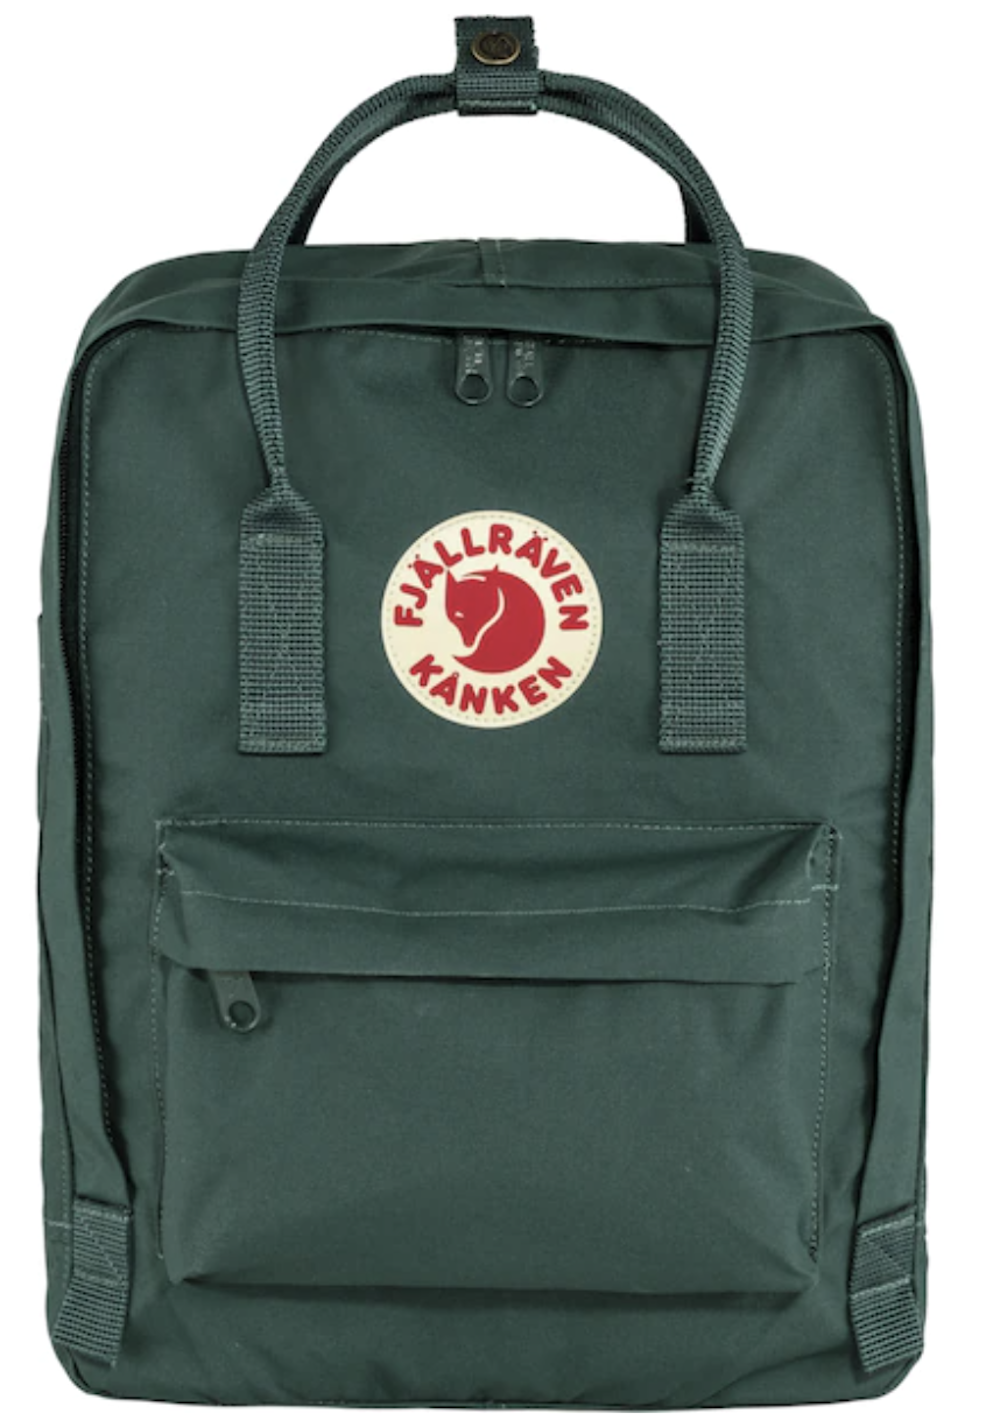 Kanka backpack